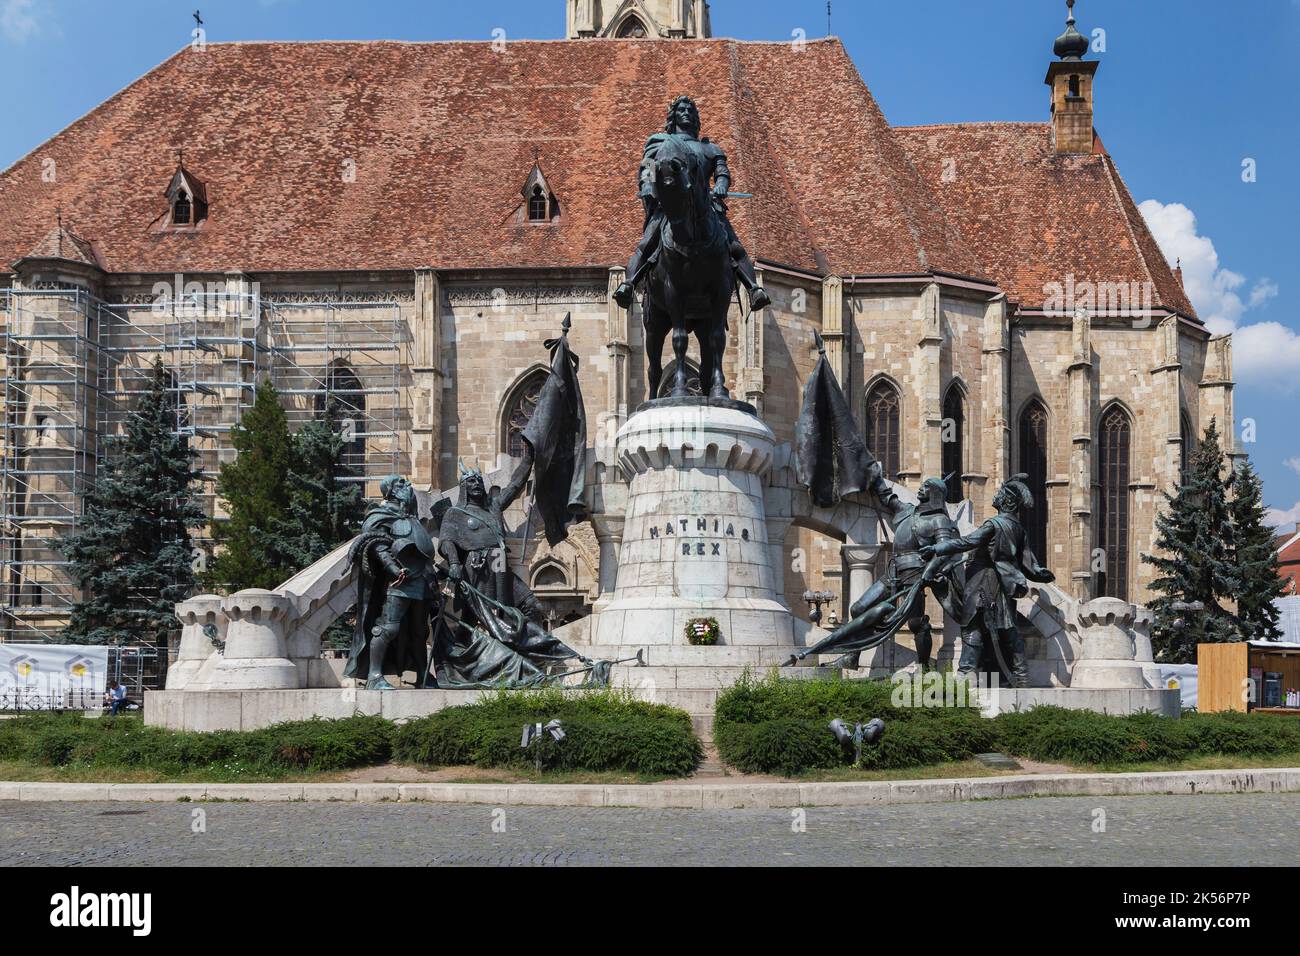 CLUJ-NAPOCA, TRANSILVANIA, ROMANIA - 21 AGOSTO 2018: La famosa statua di Mathias Rex il 21 agosto 2018 in Cluj-Napoca. Foto Stock